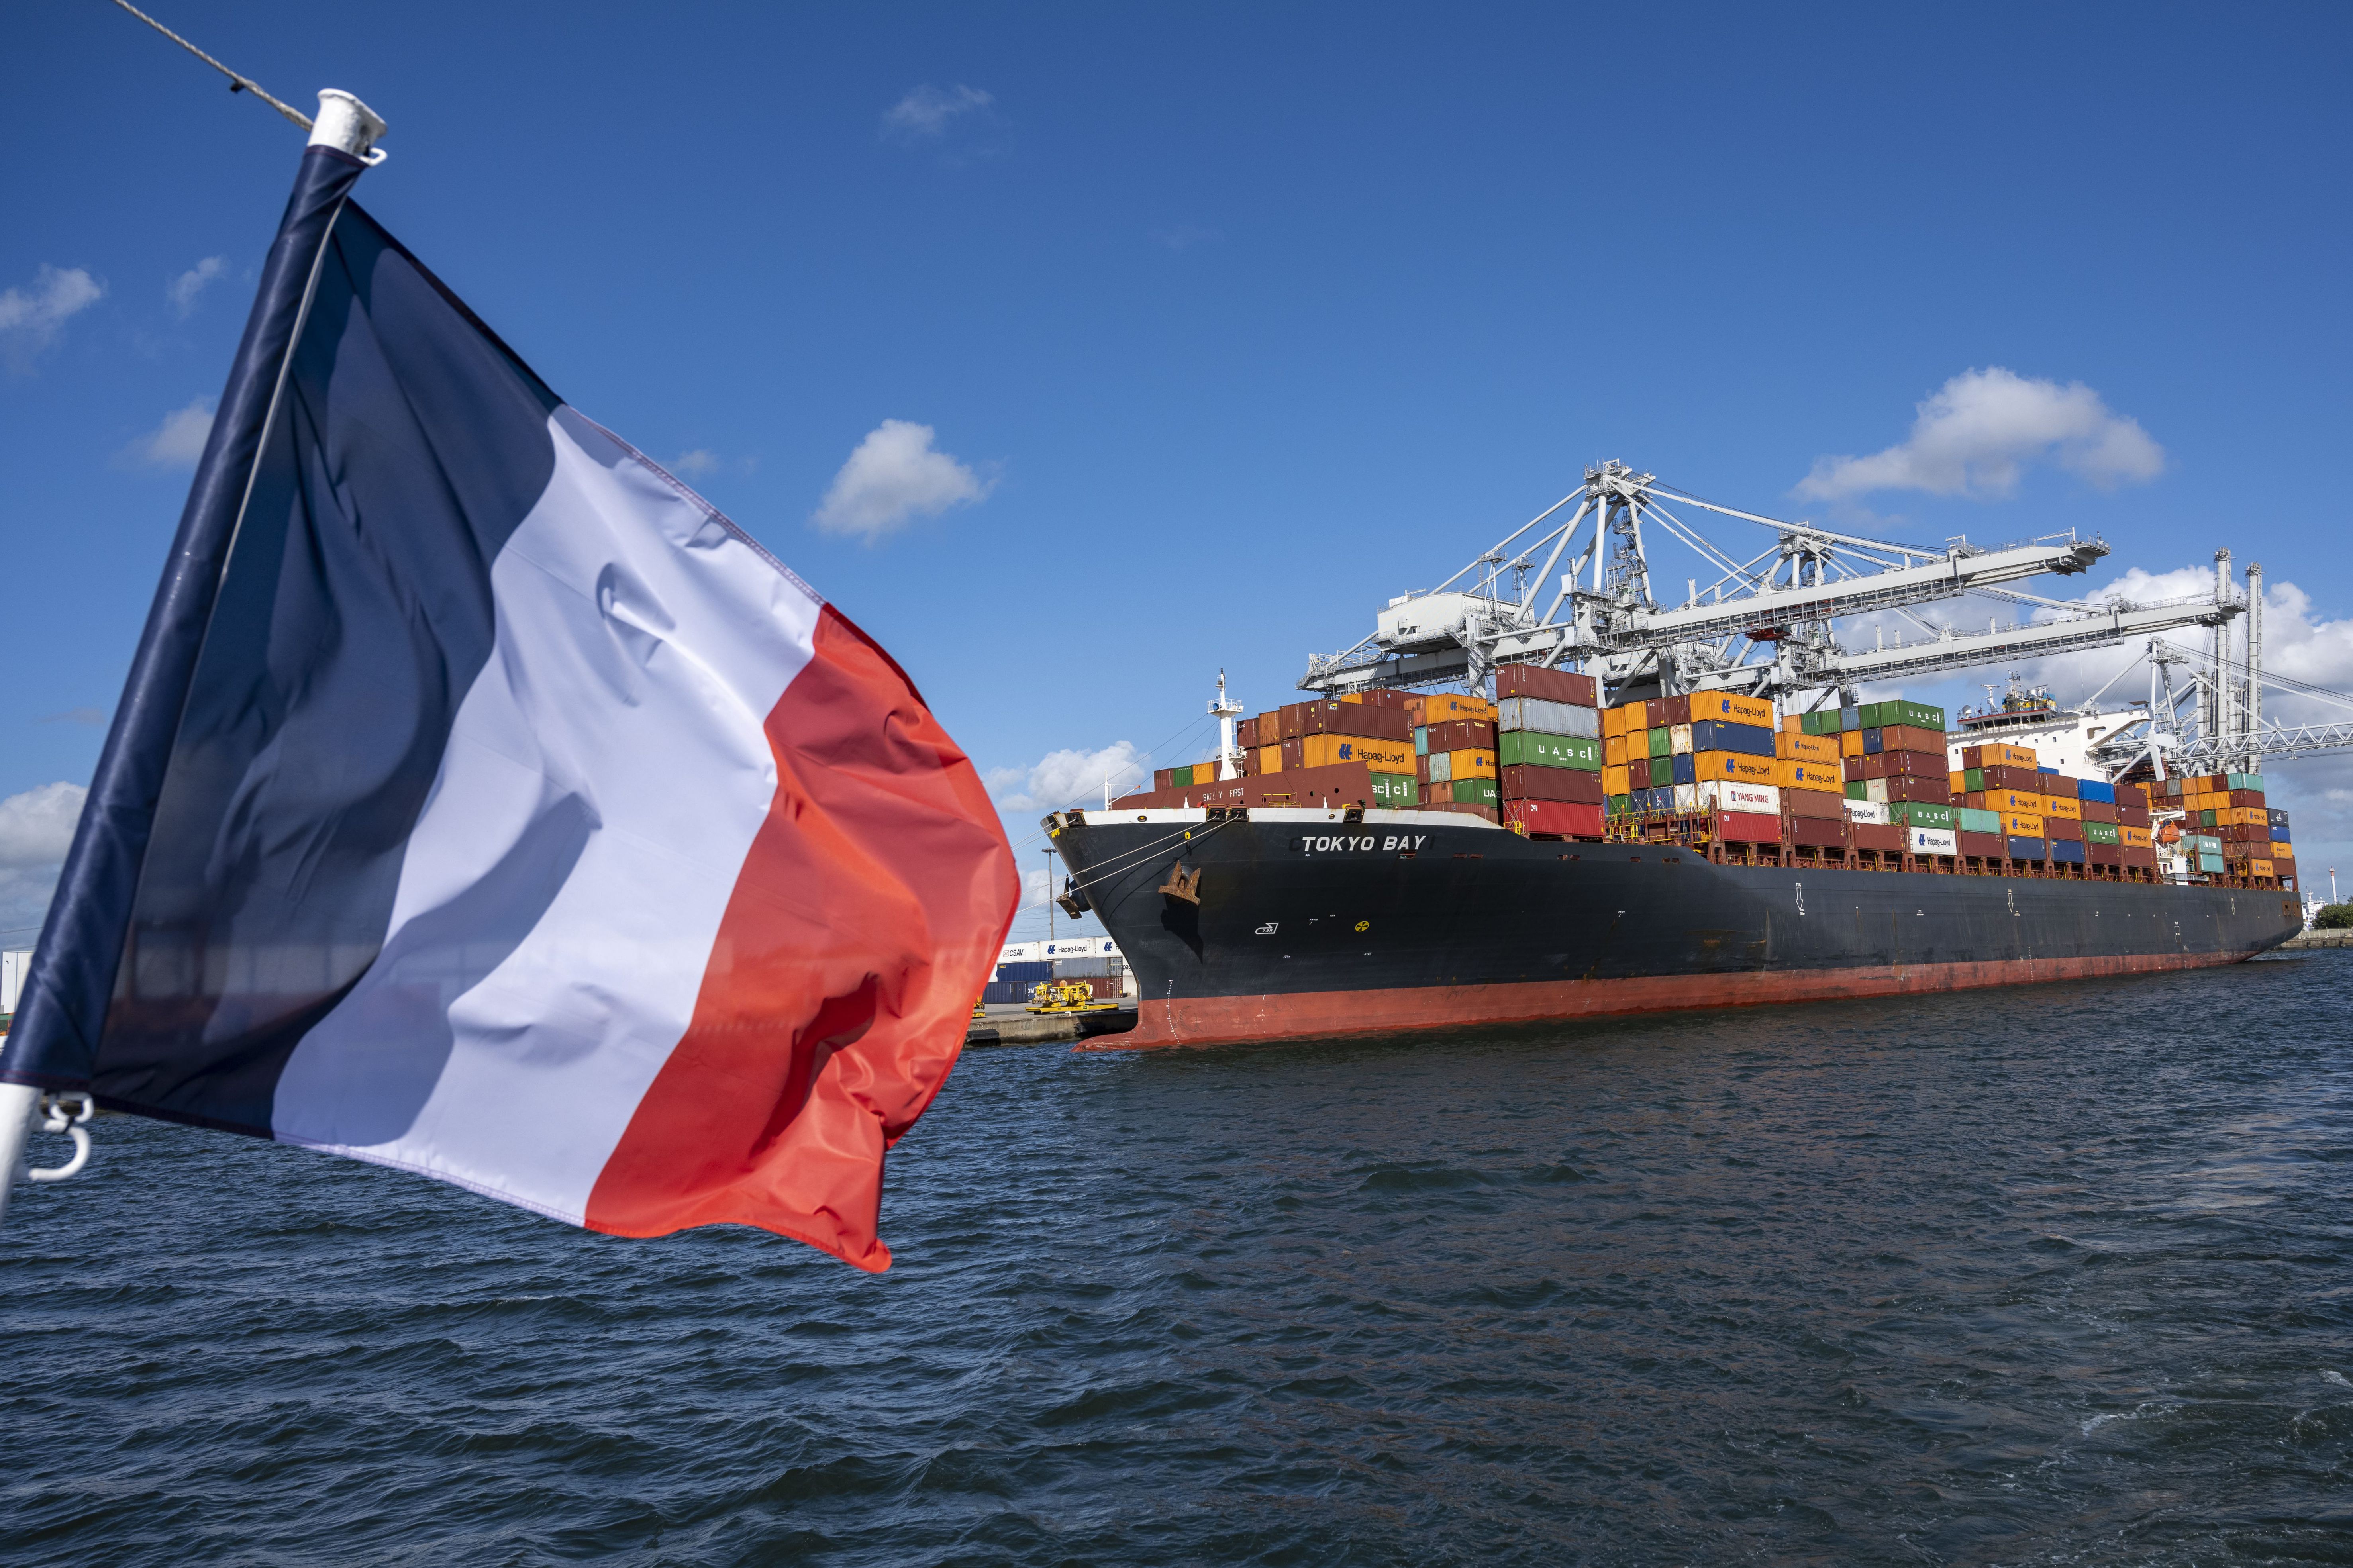 Le déficit commercial français, une juste source d'inquiétude ?